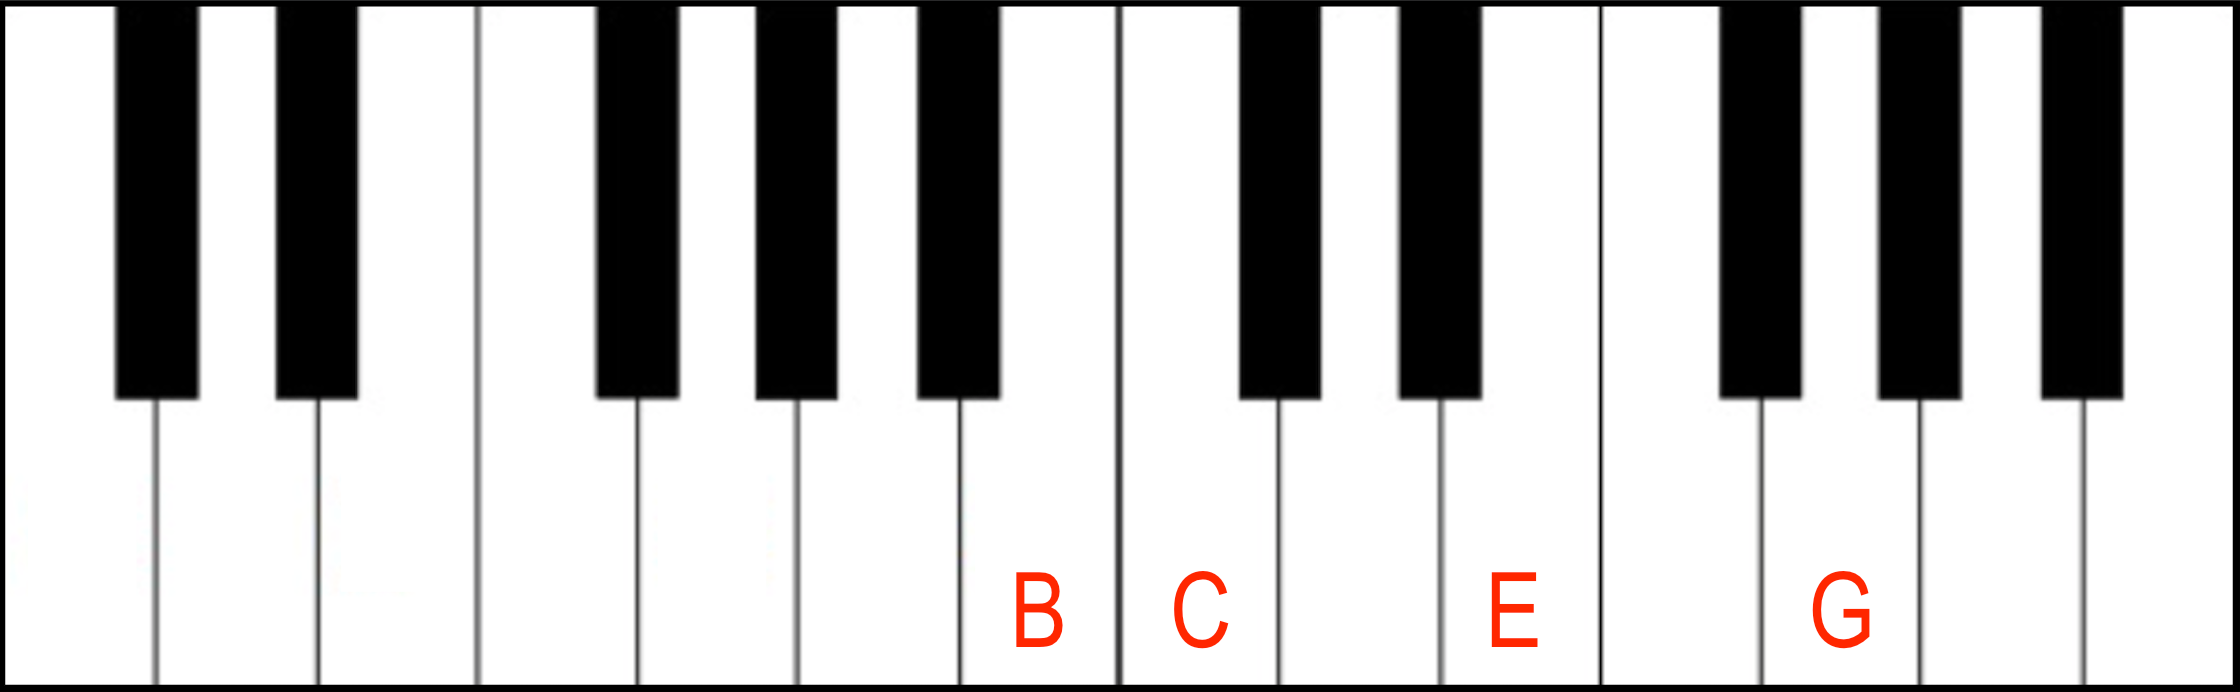 Jazz Piano Chords: Major 7th Jazz Piano Chord in third inversion